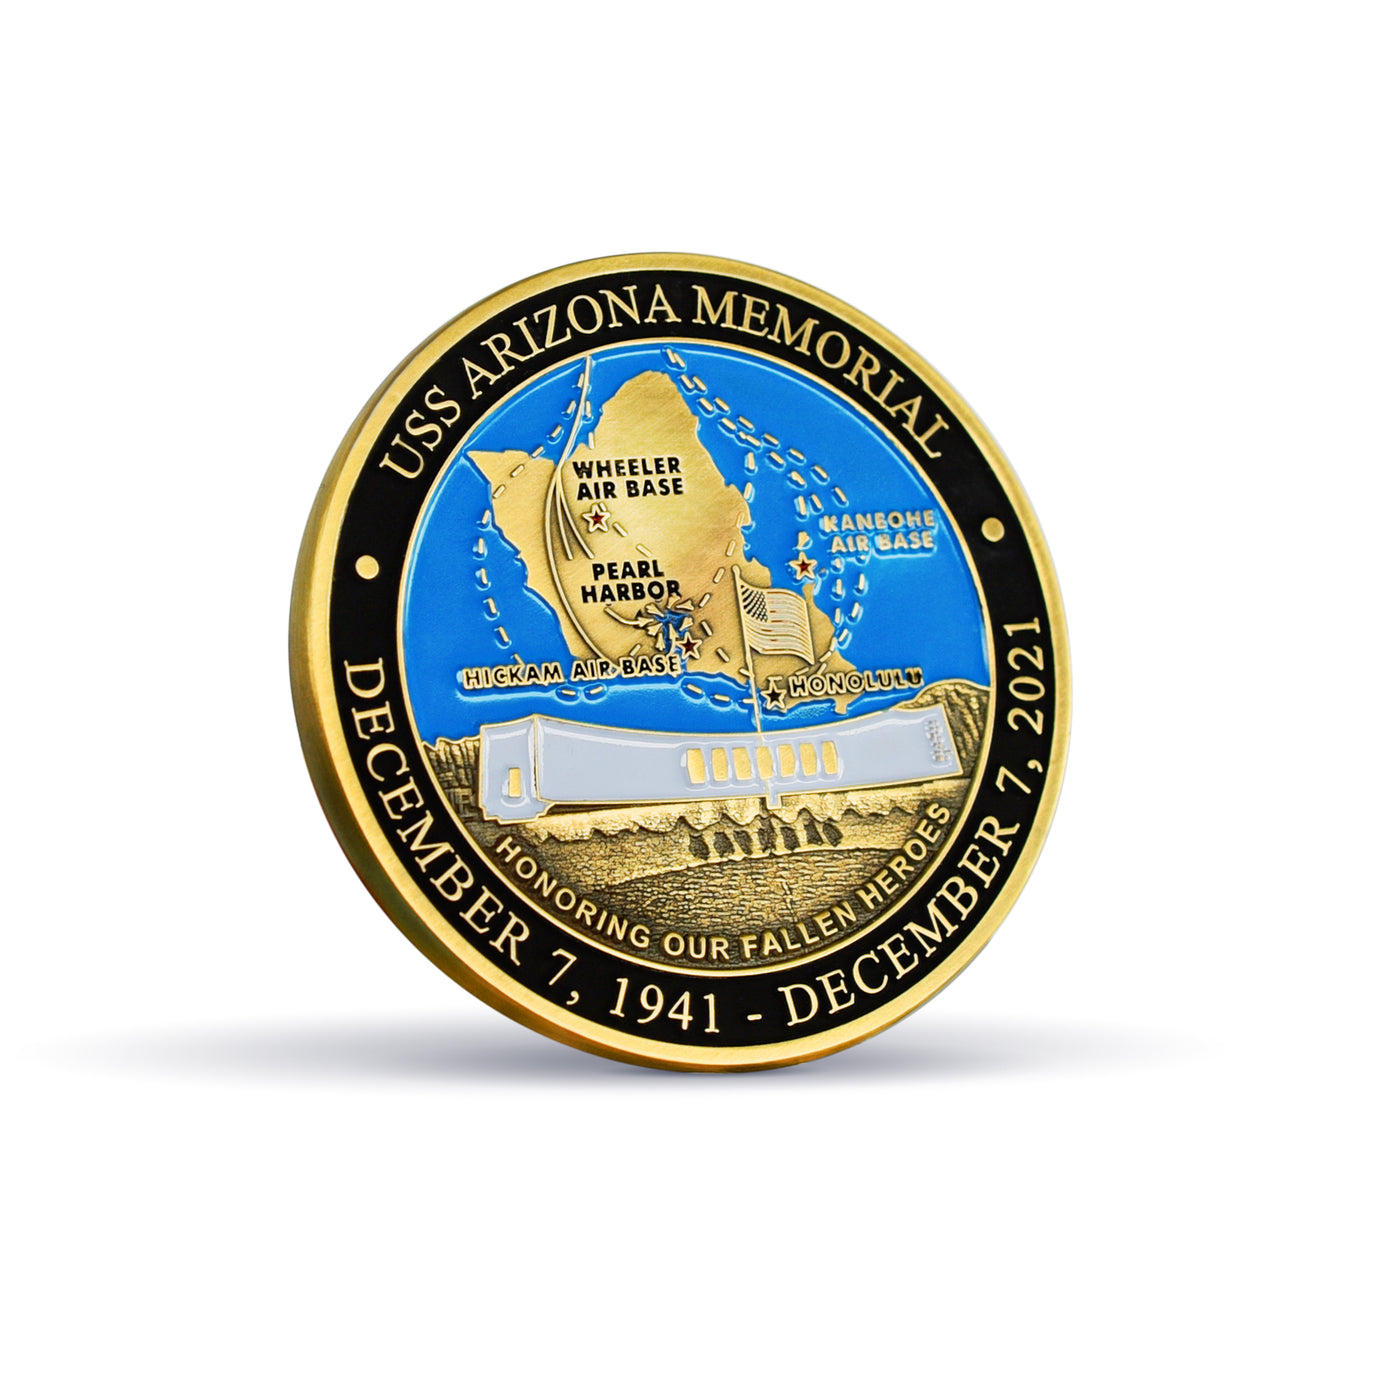 Pearl Harbor 80th Anniversary Commemorative Coin